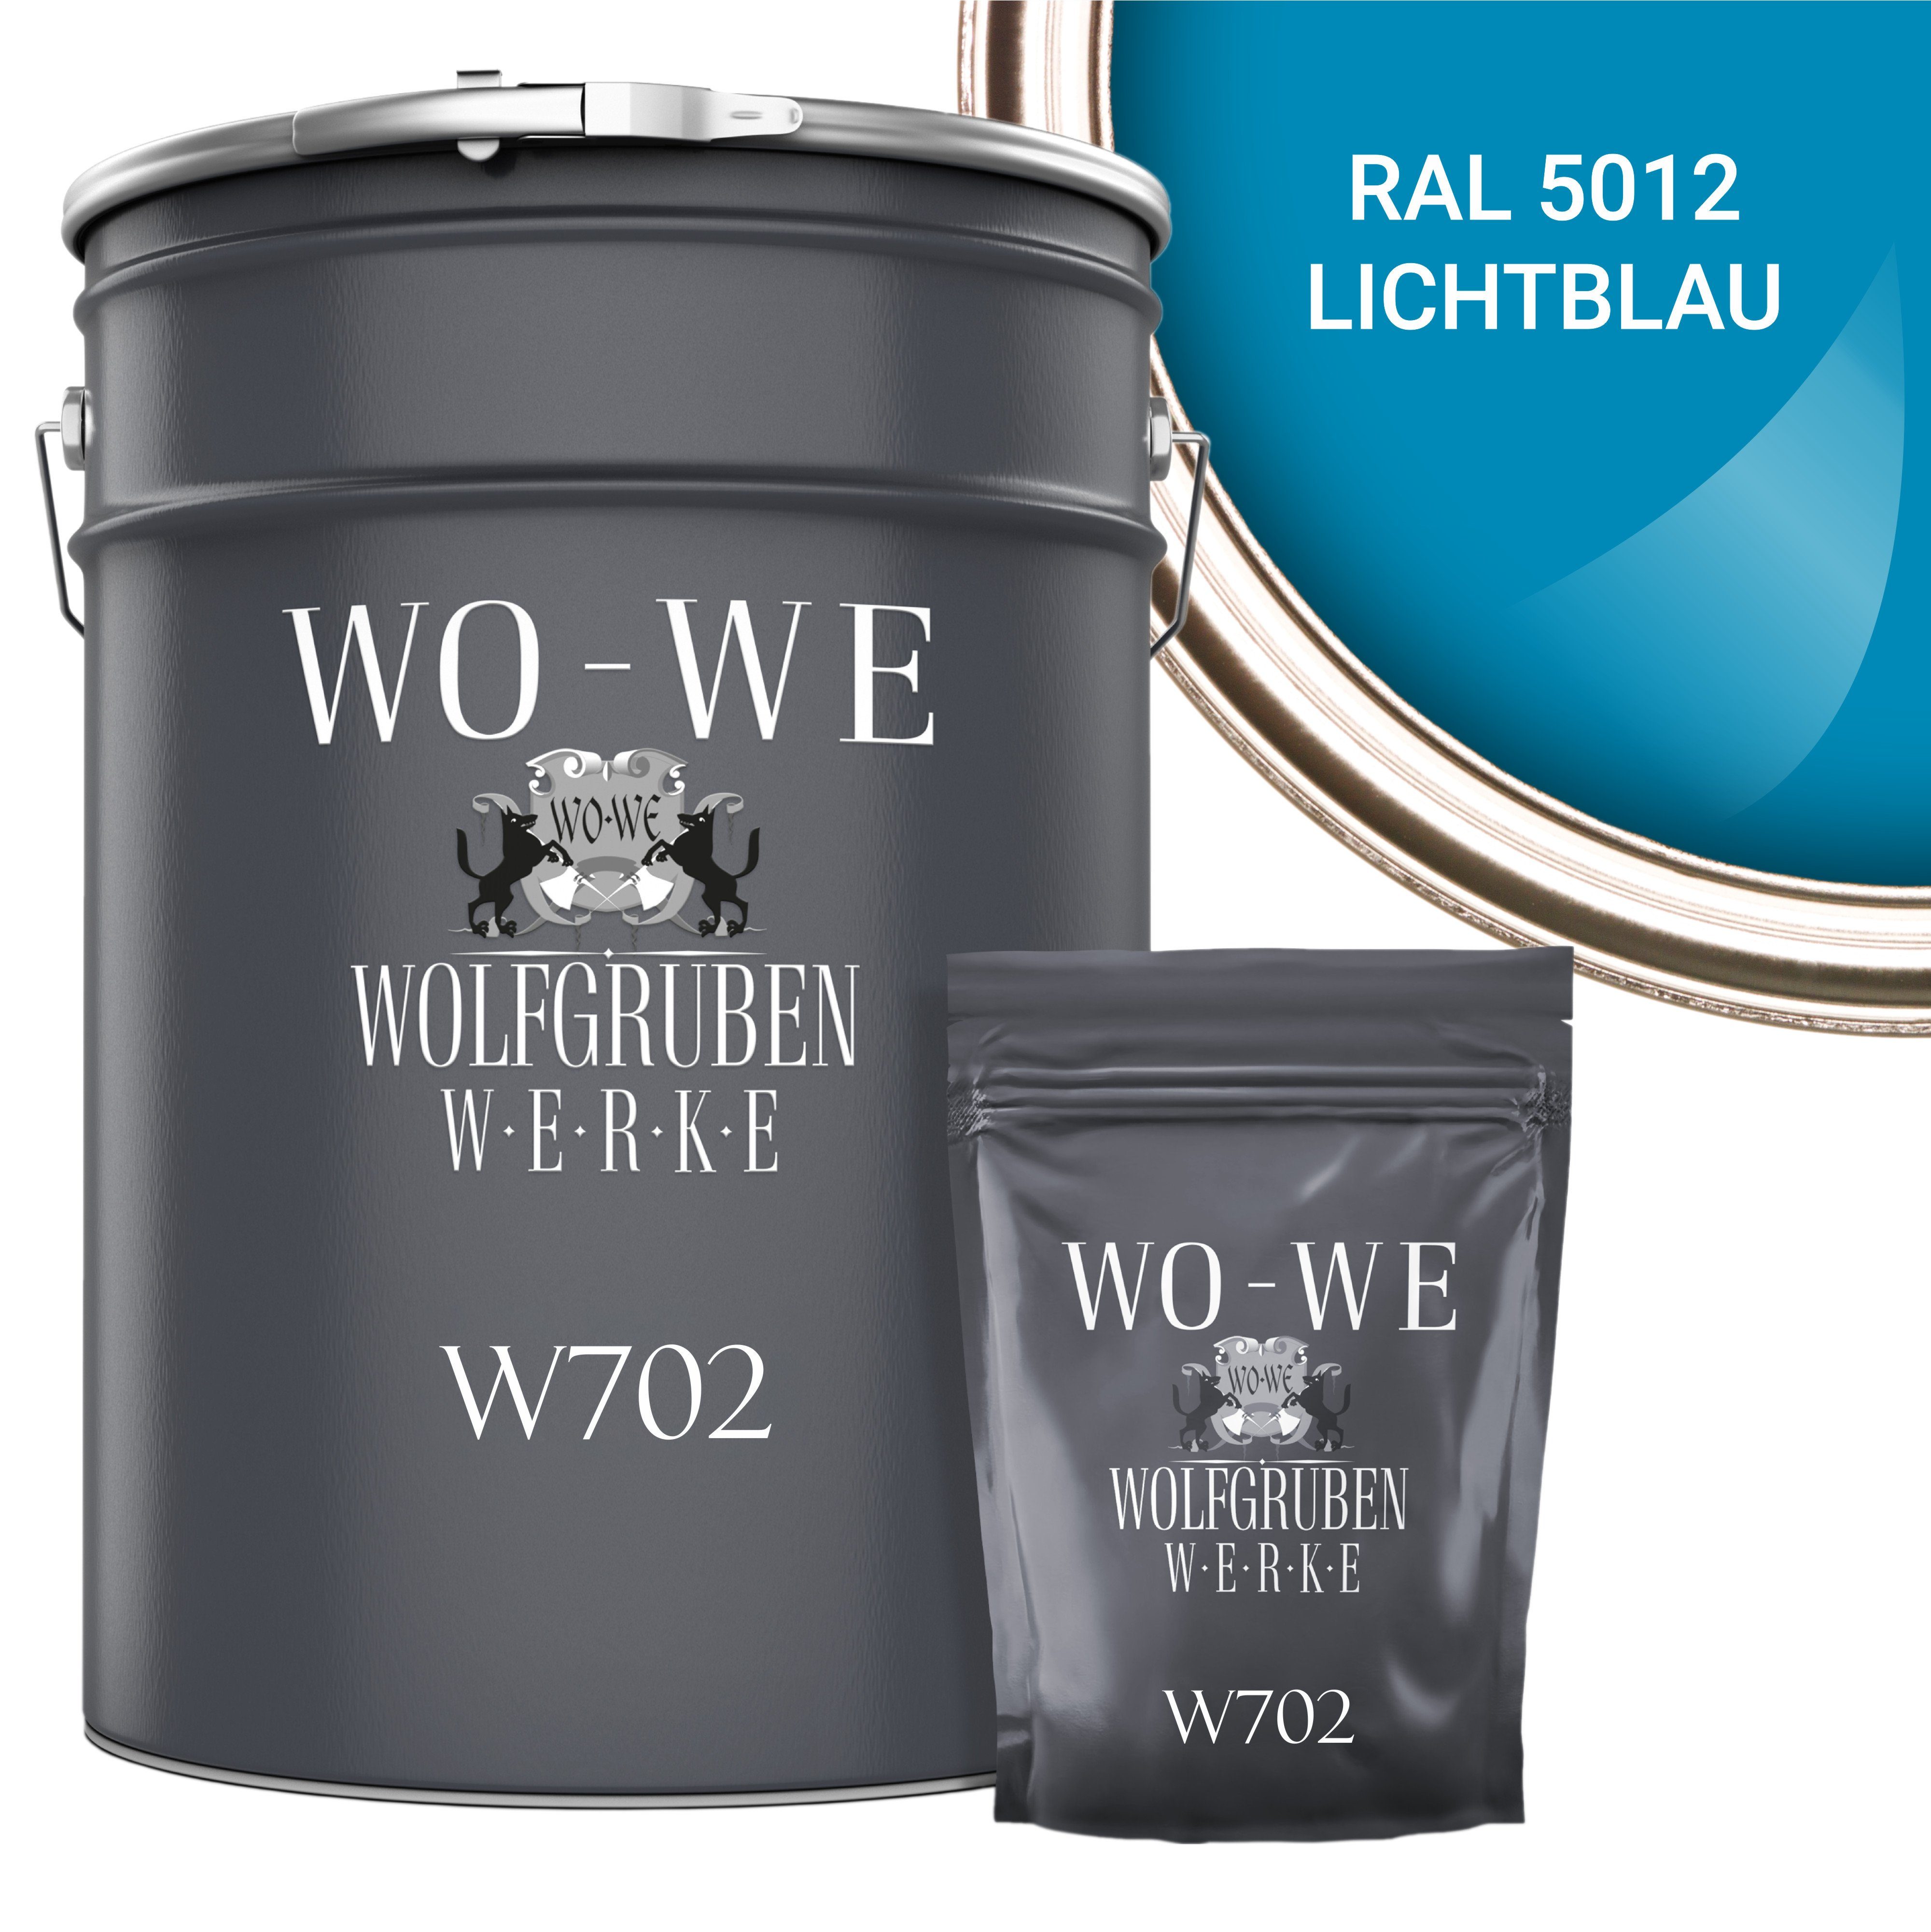 WO-WE Bodenversiegelung 2K Garagenfarbe Bodenbeschichtung W702, 2,5-20Kg, Seidenglänzend, Epoxidharz RAL 5012 Lichtblau